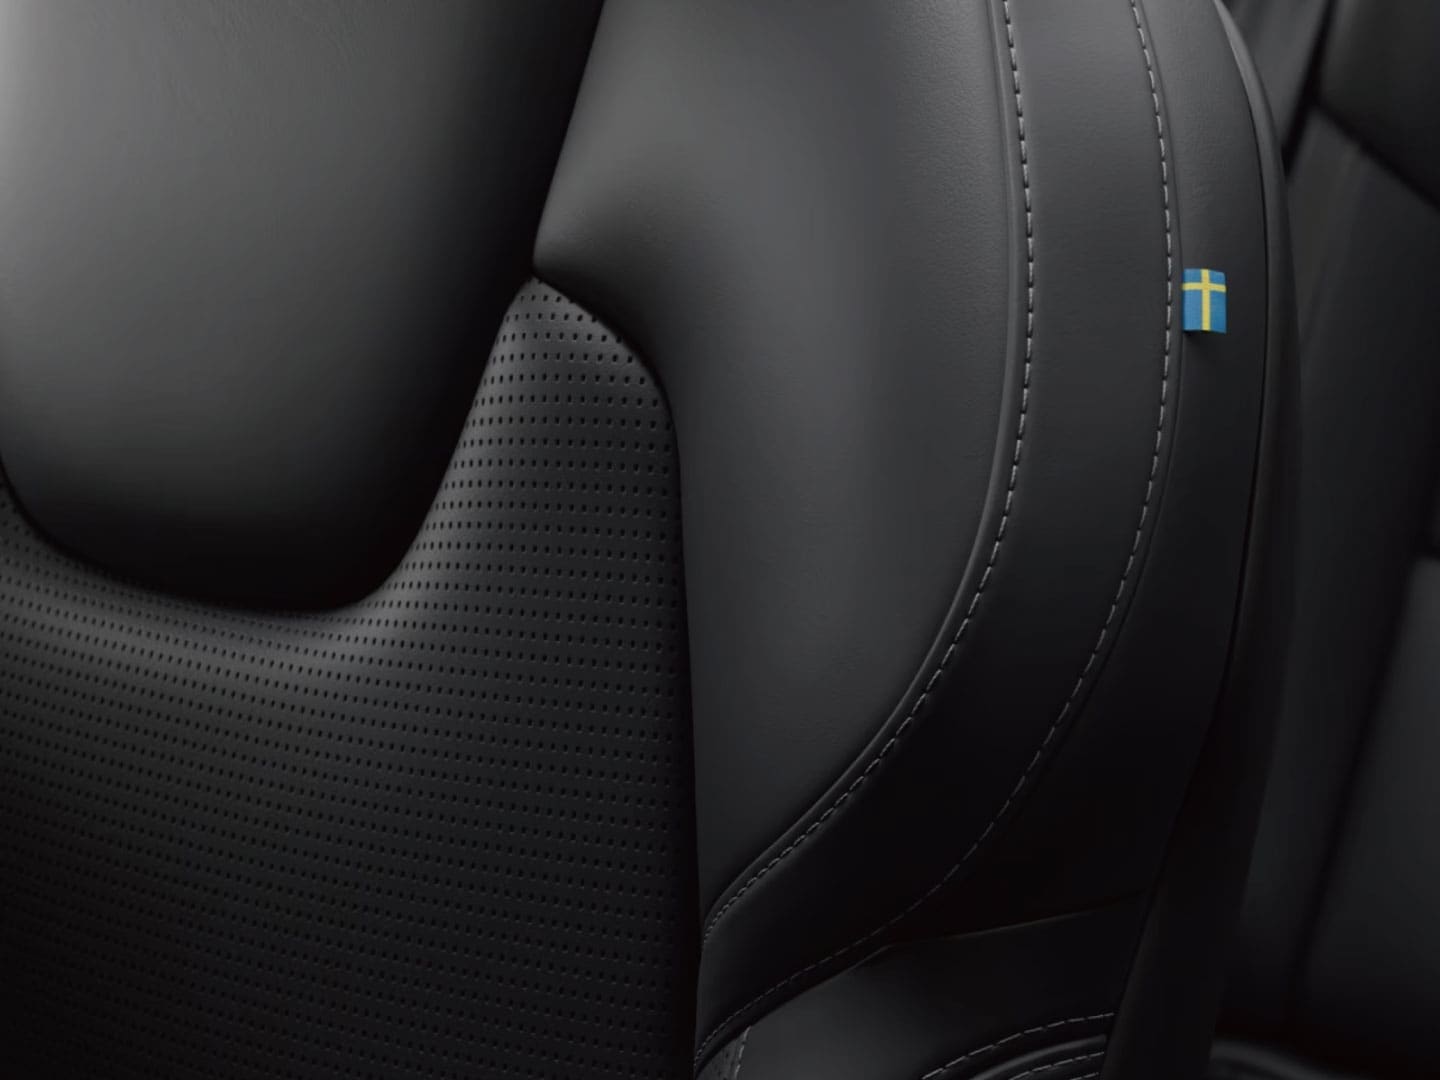 Volvo S60 Recharge 量身訂製的無皮革羊毛混紡座椅特寫。